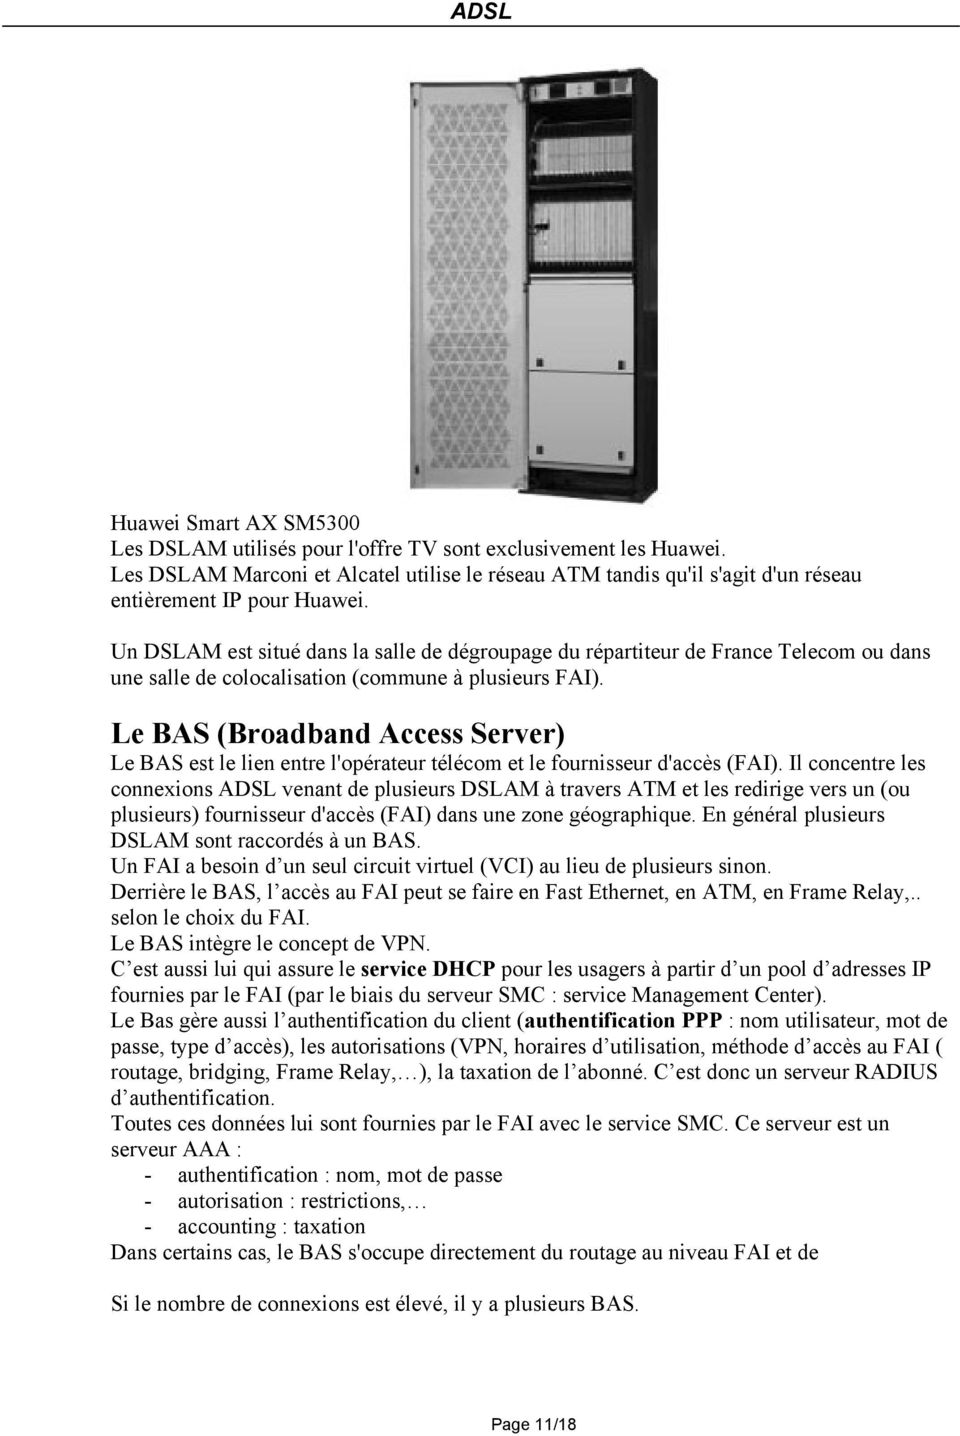 Le BAS (Broadband Access Server) Le BAS est le lien entre l'opérateur télécom et le fournisseur d'accès (FAI).